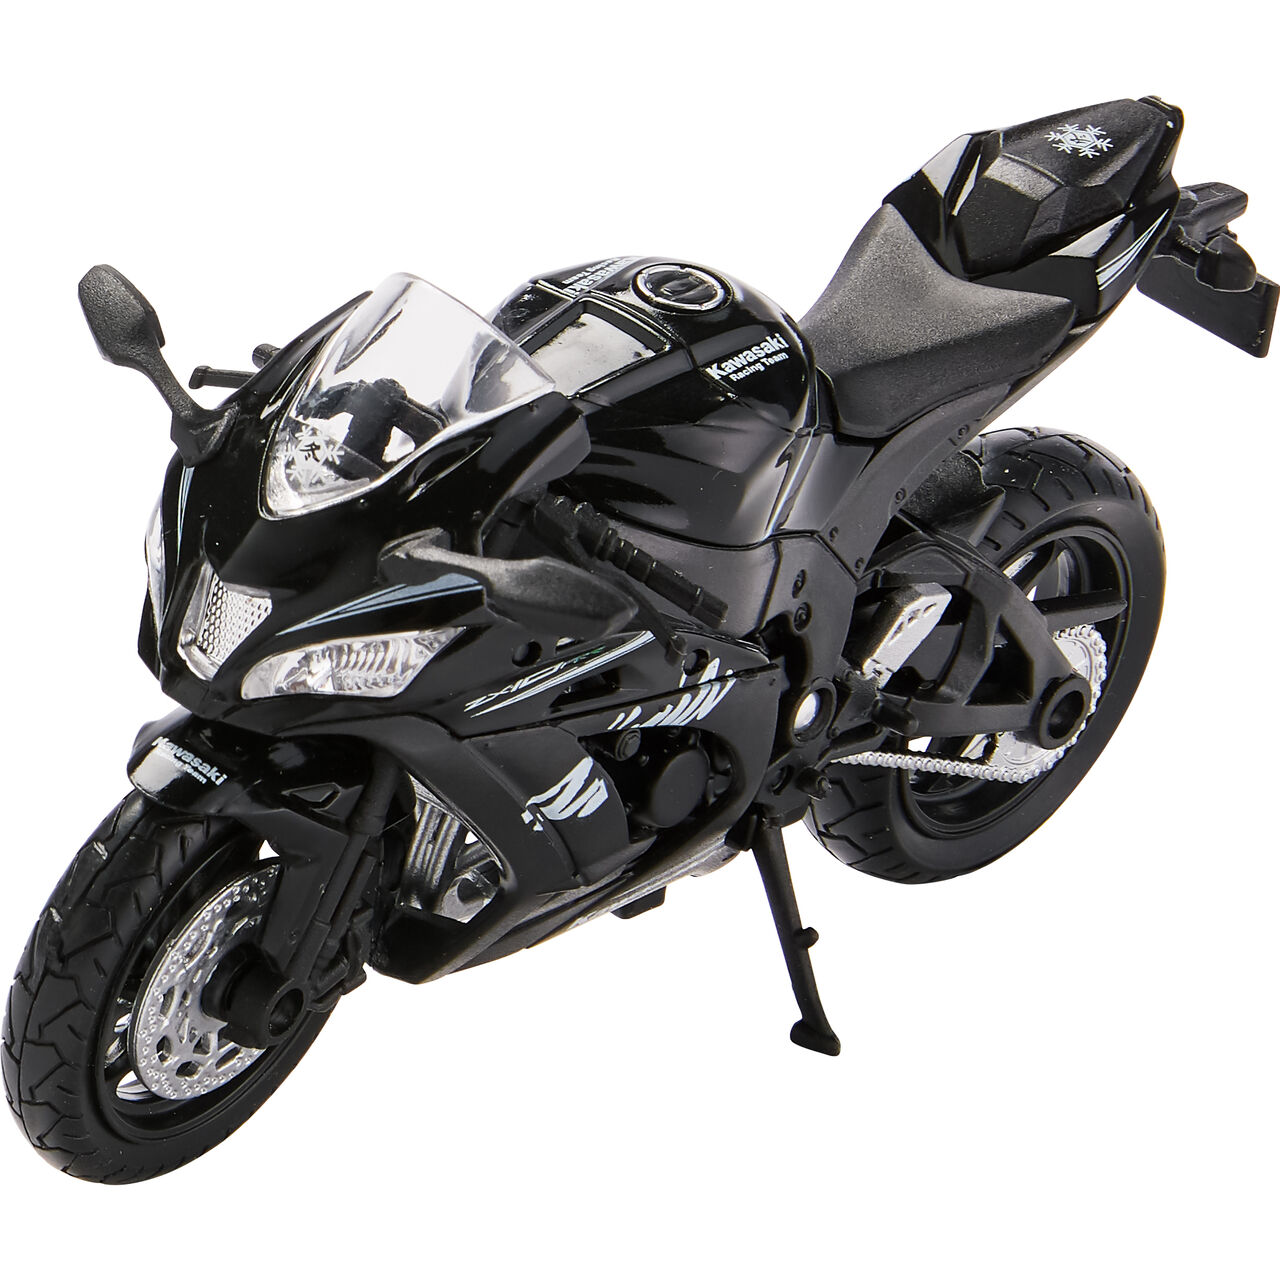 motorcycle model 1:18 Kawasaki ZX-10 RR Ninja 2016-